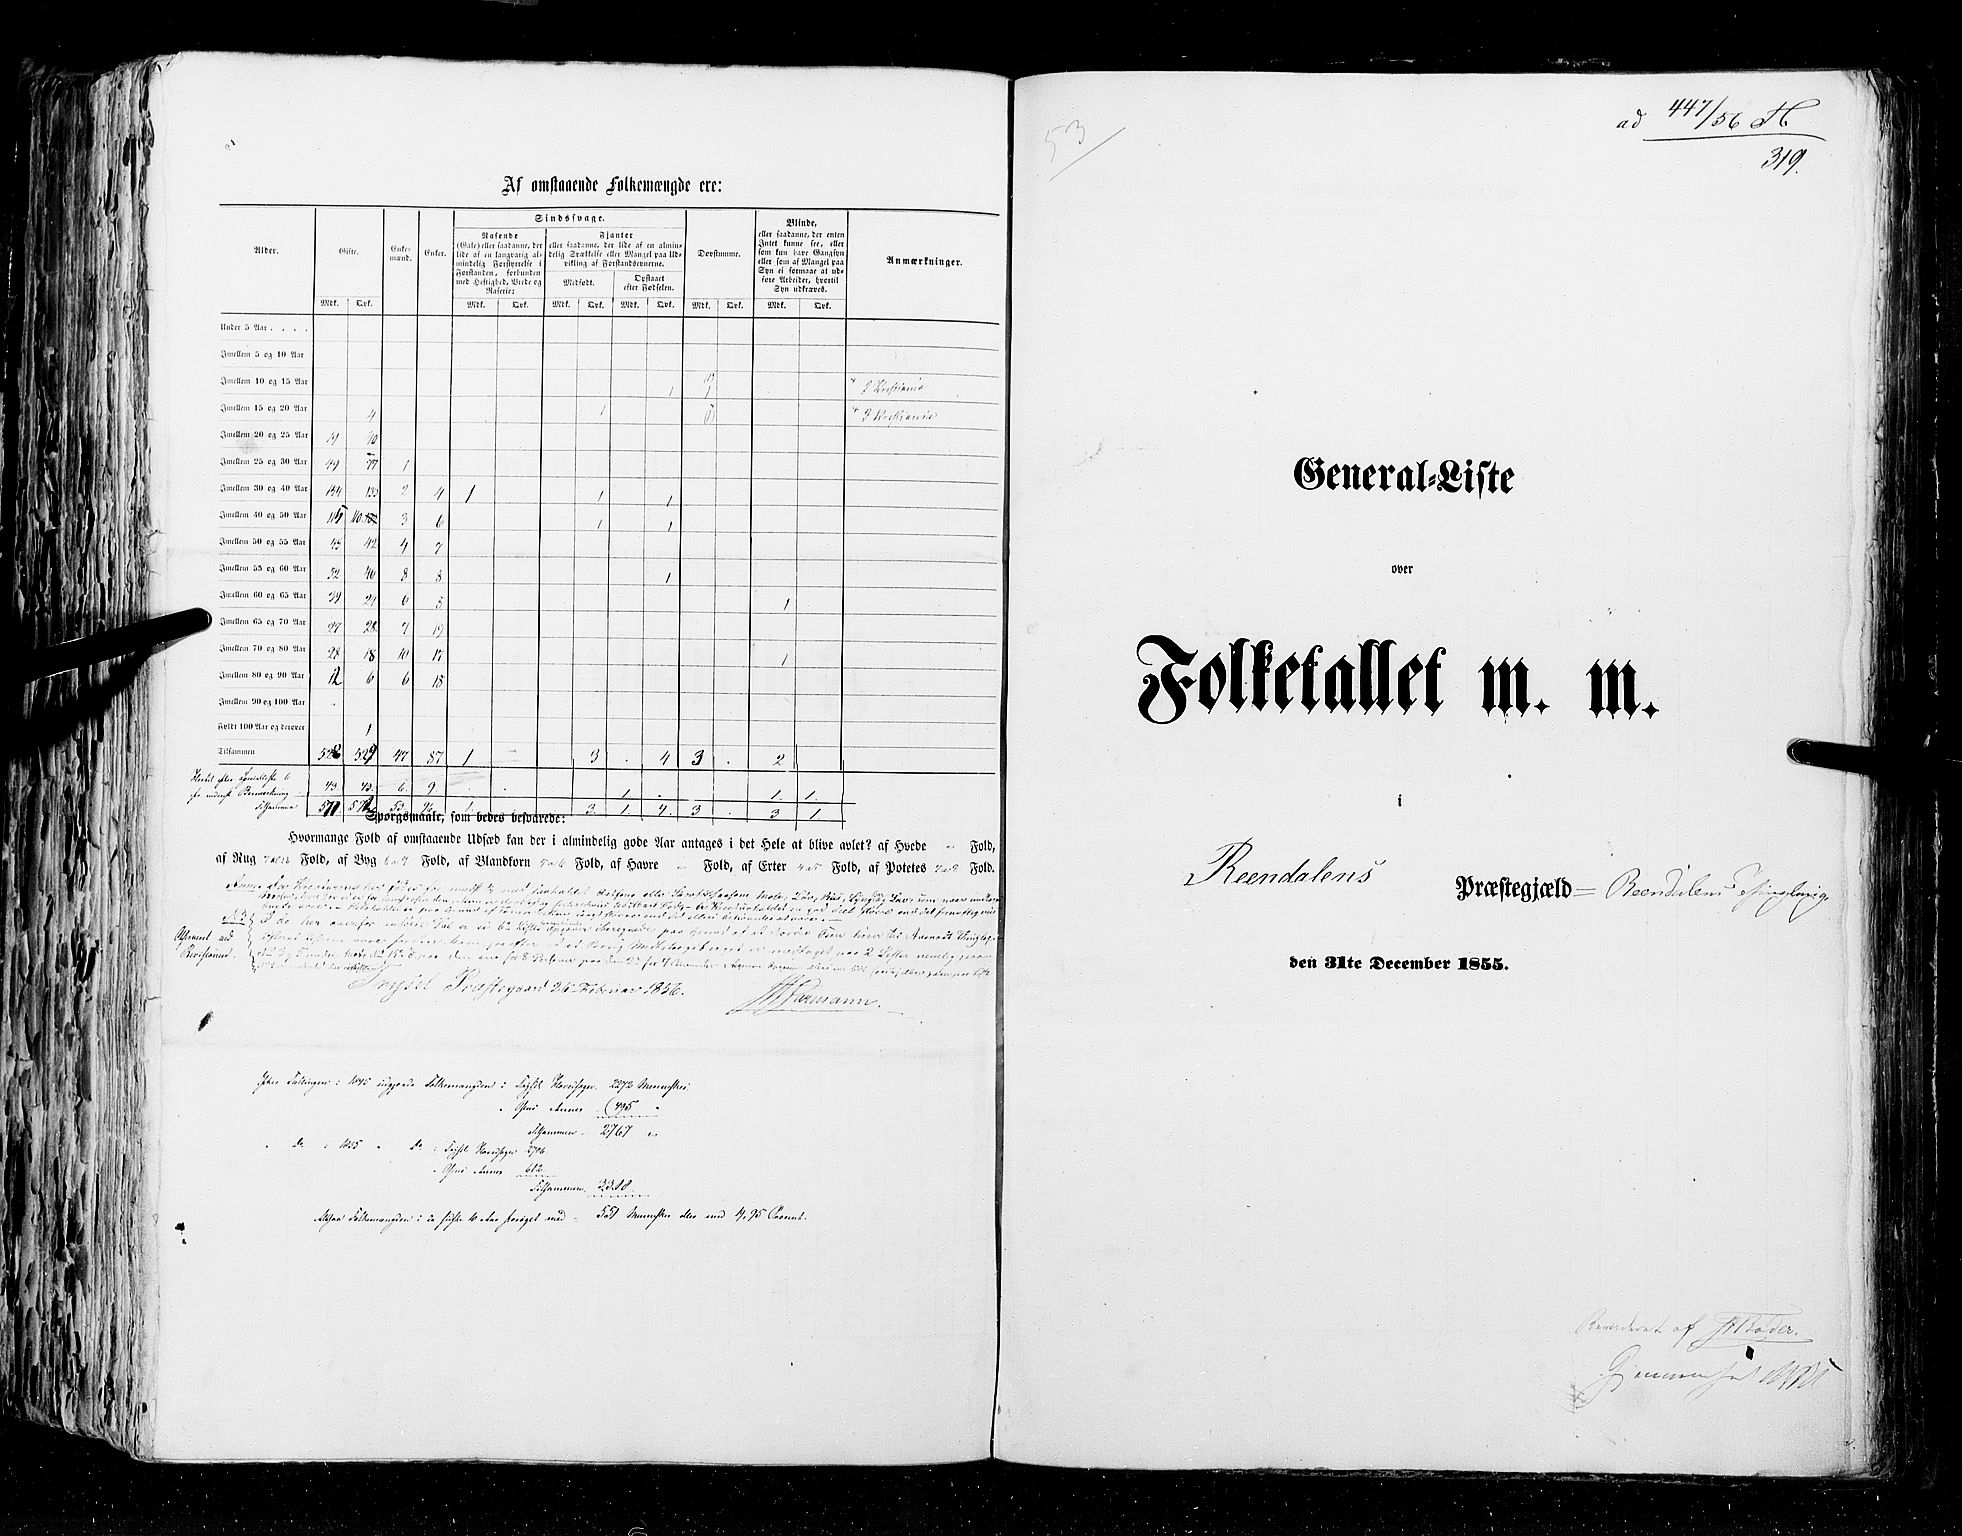 RA, Folketellingen 1855, bind 1: Akershus amt, Smålenenes amt og Hedemarken amt, 1855, s. 319